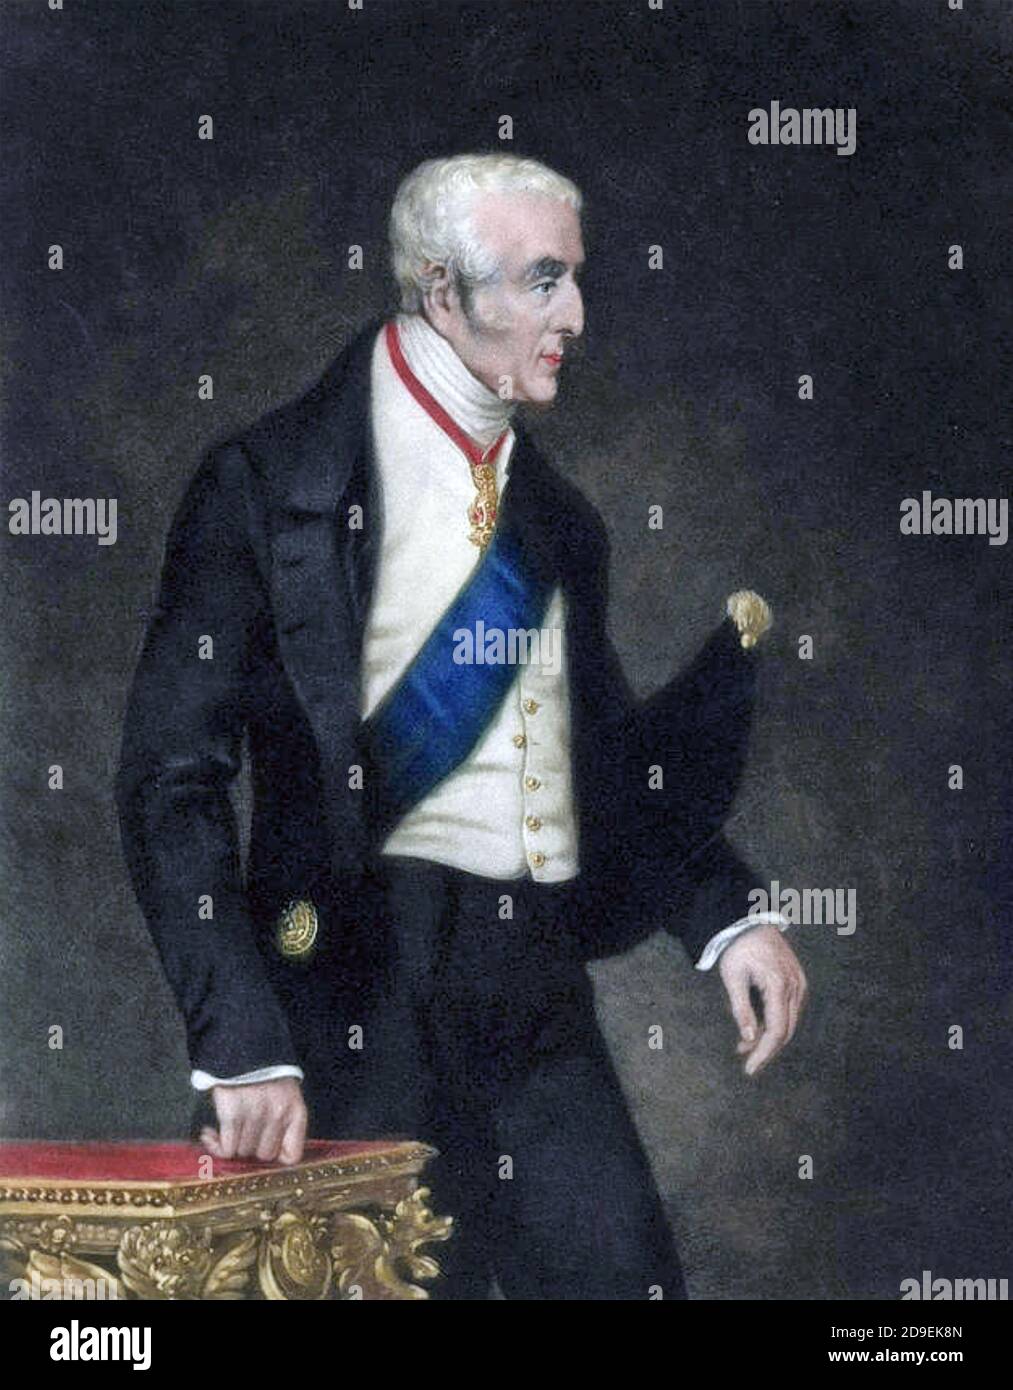 ARTHUR WELLESLEY, DUQUE DE WELLINGTON (1769-1852) soldado anglo-irlandés alrededor de 1850 Foto de stock